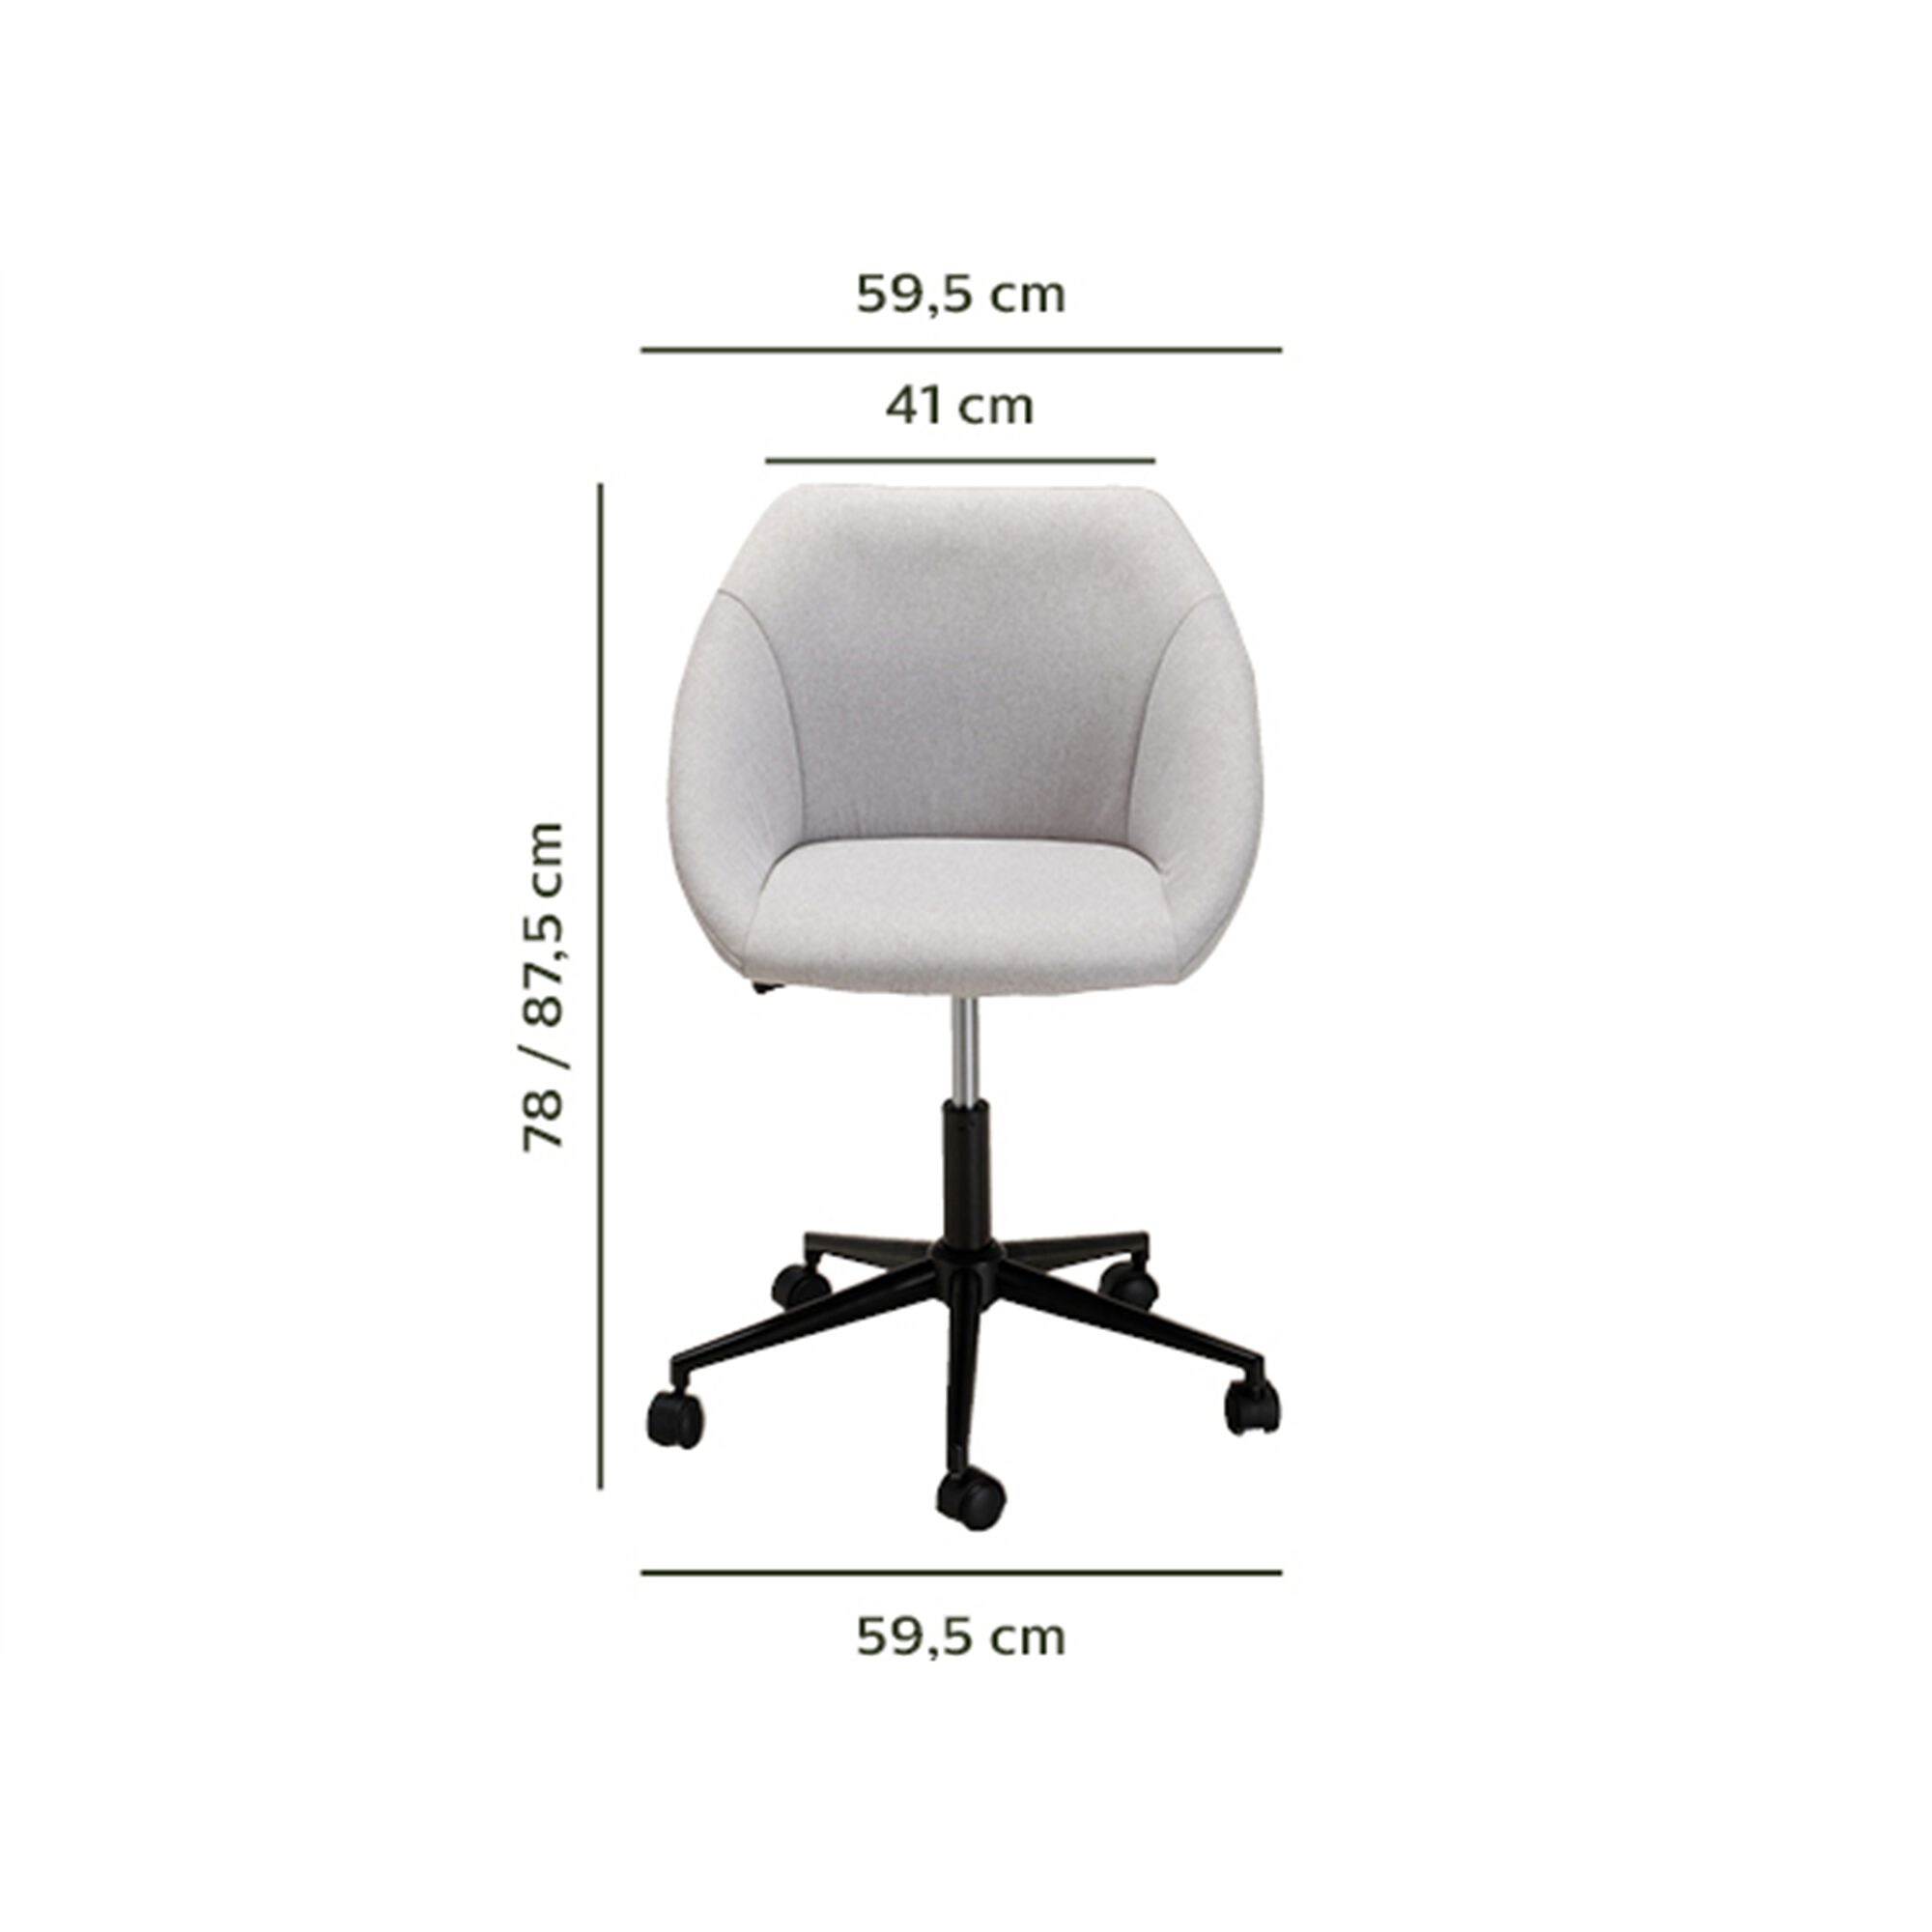 Chaise de bureau en tissu à roulettes - gris-LESTAQUE